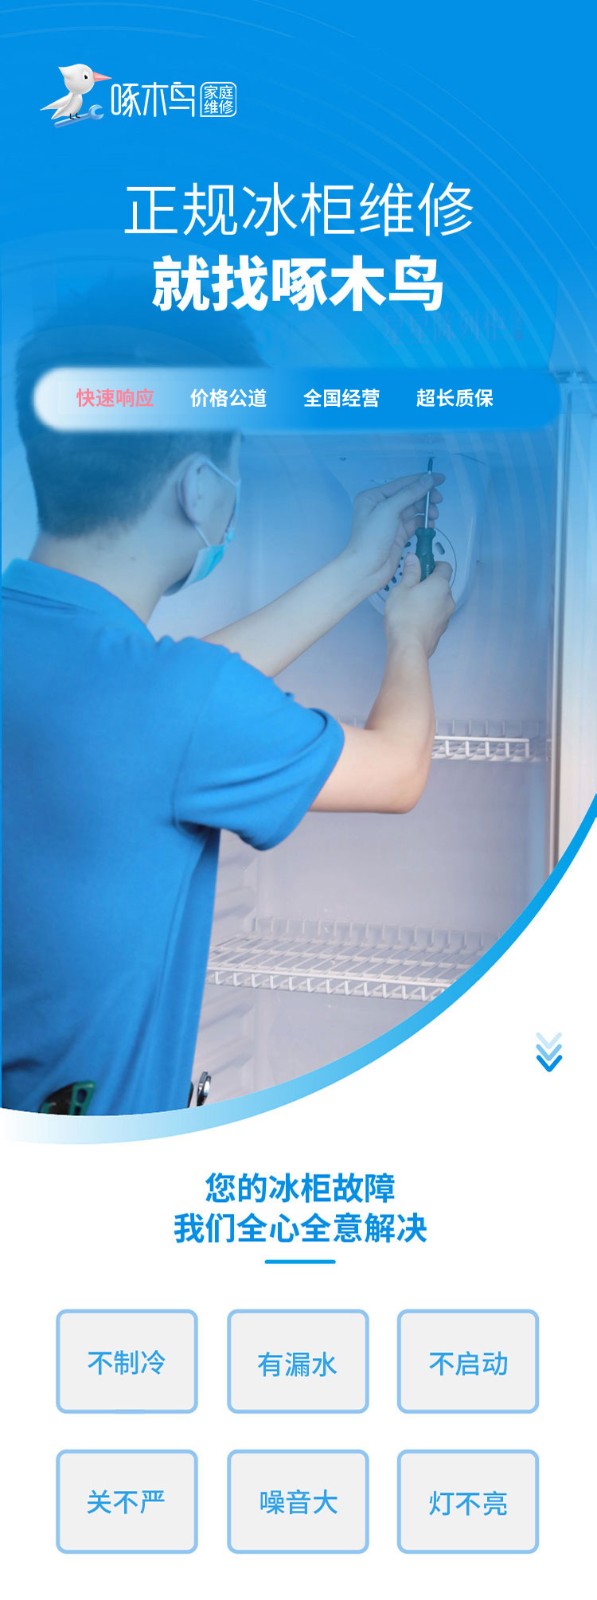 冰柜维修 冰柜结冰/漏水/不制冷/发烫/加制冷剂等故障上门检测维修